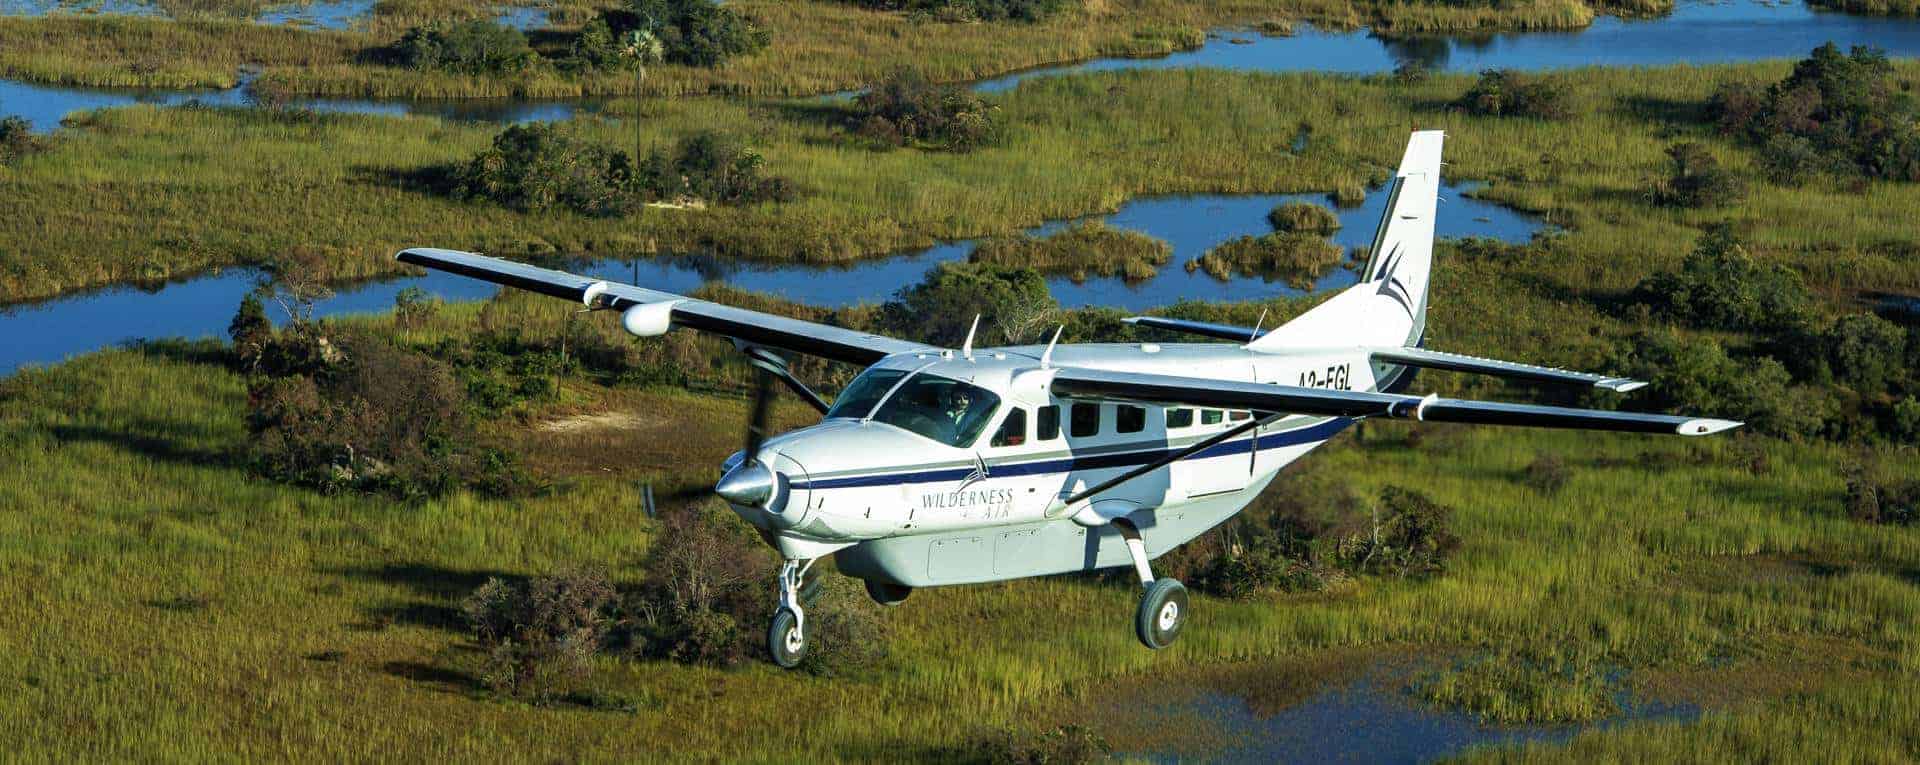 are safari planes safe